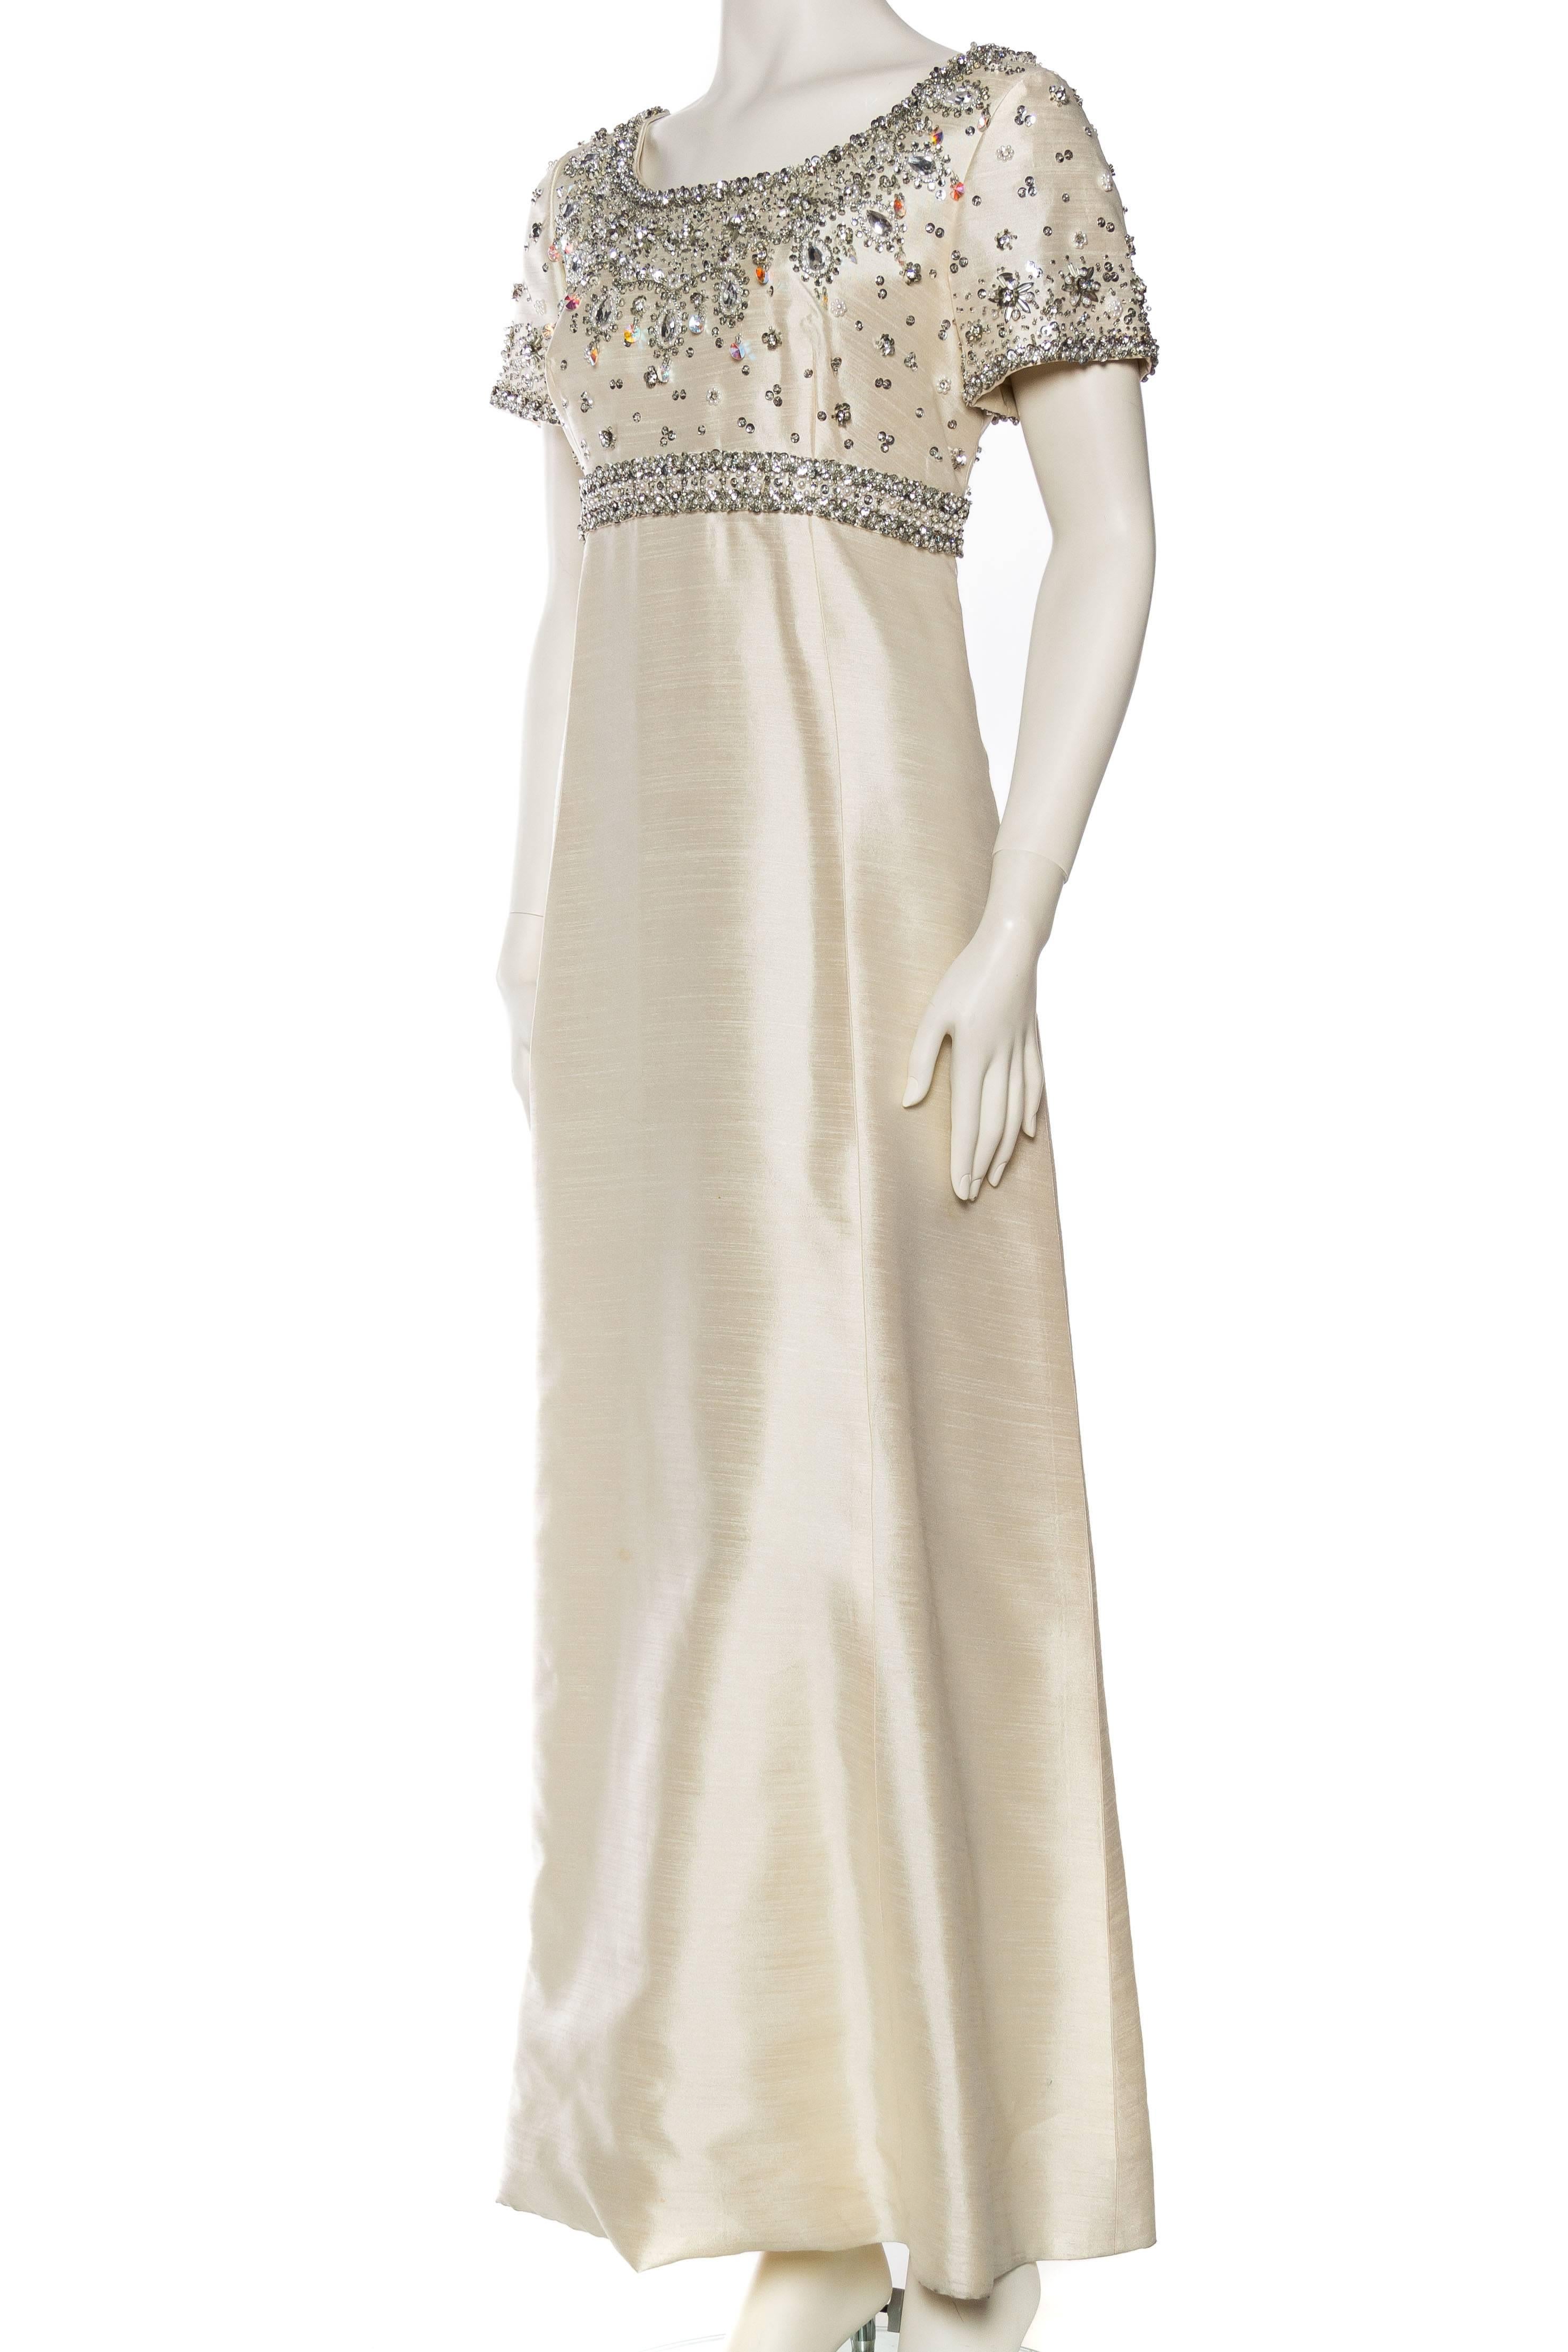 1960s empire waist dress